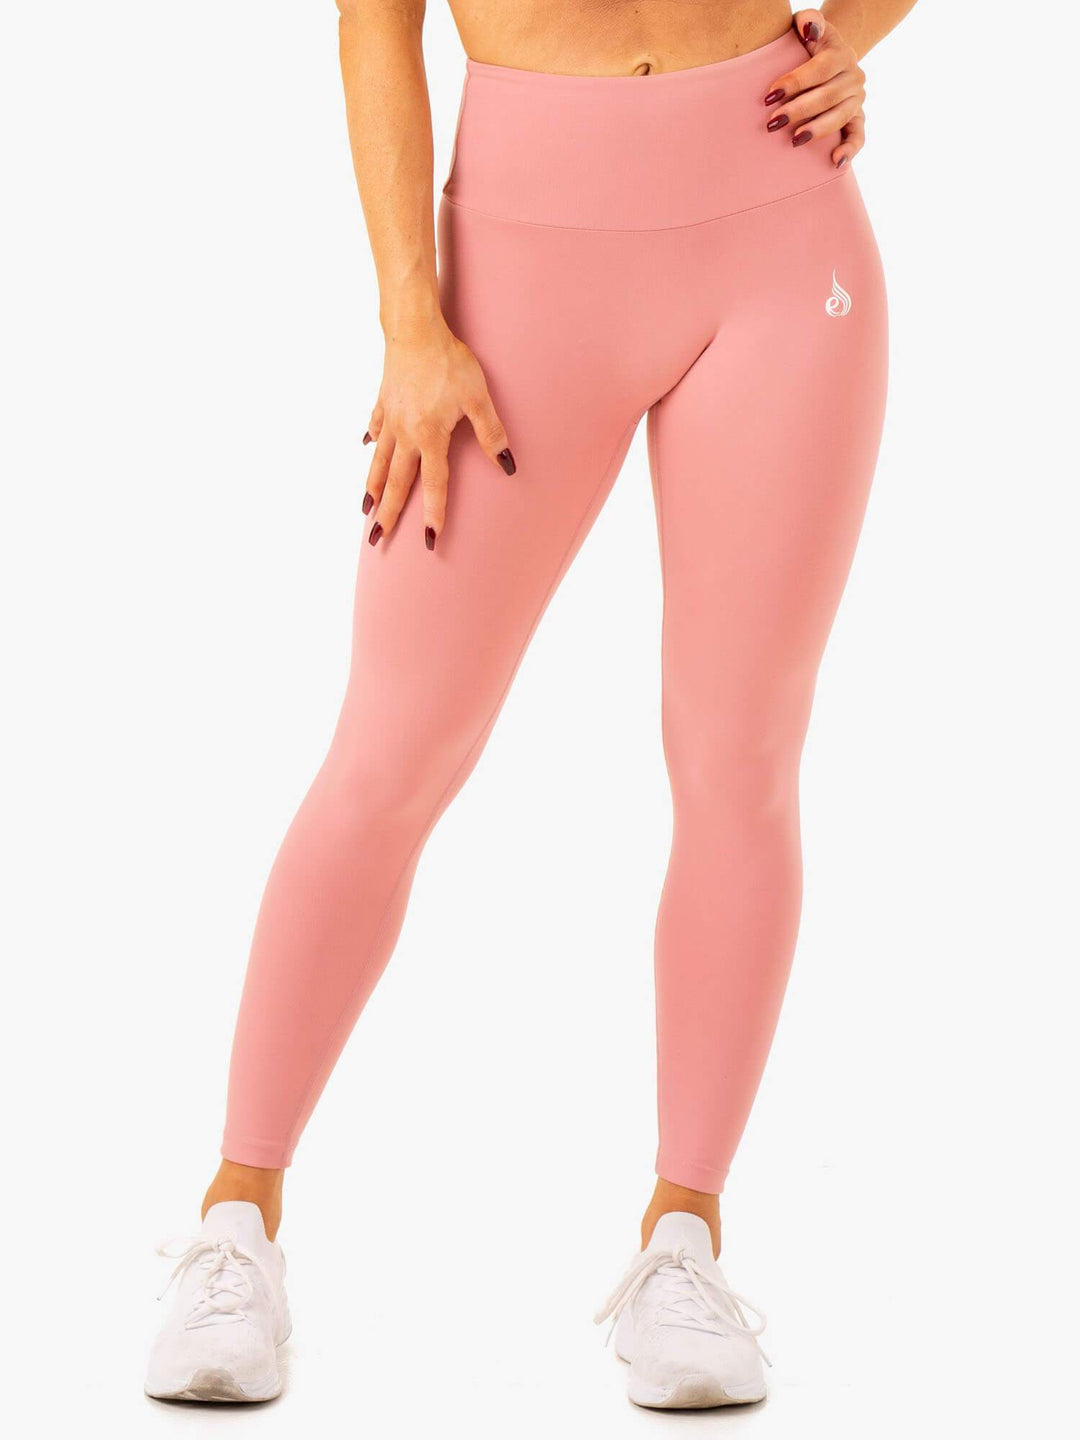 https://www.ryderwear.com/cdn/shop/products/vital-high-waisted-scrunch-leggings-blush-pink-clothing-ryderwear-356458_1080x.jpg?v=1638760820